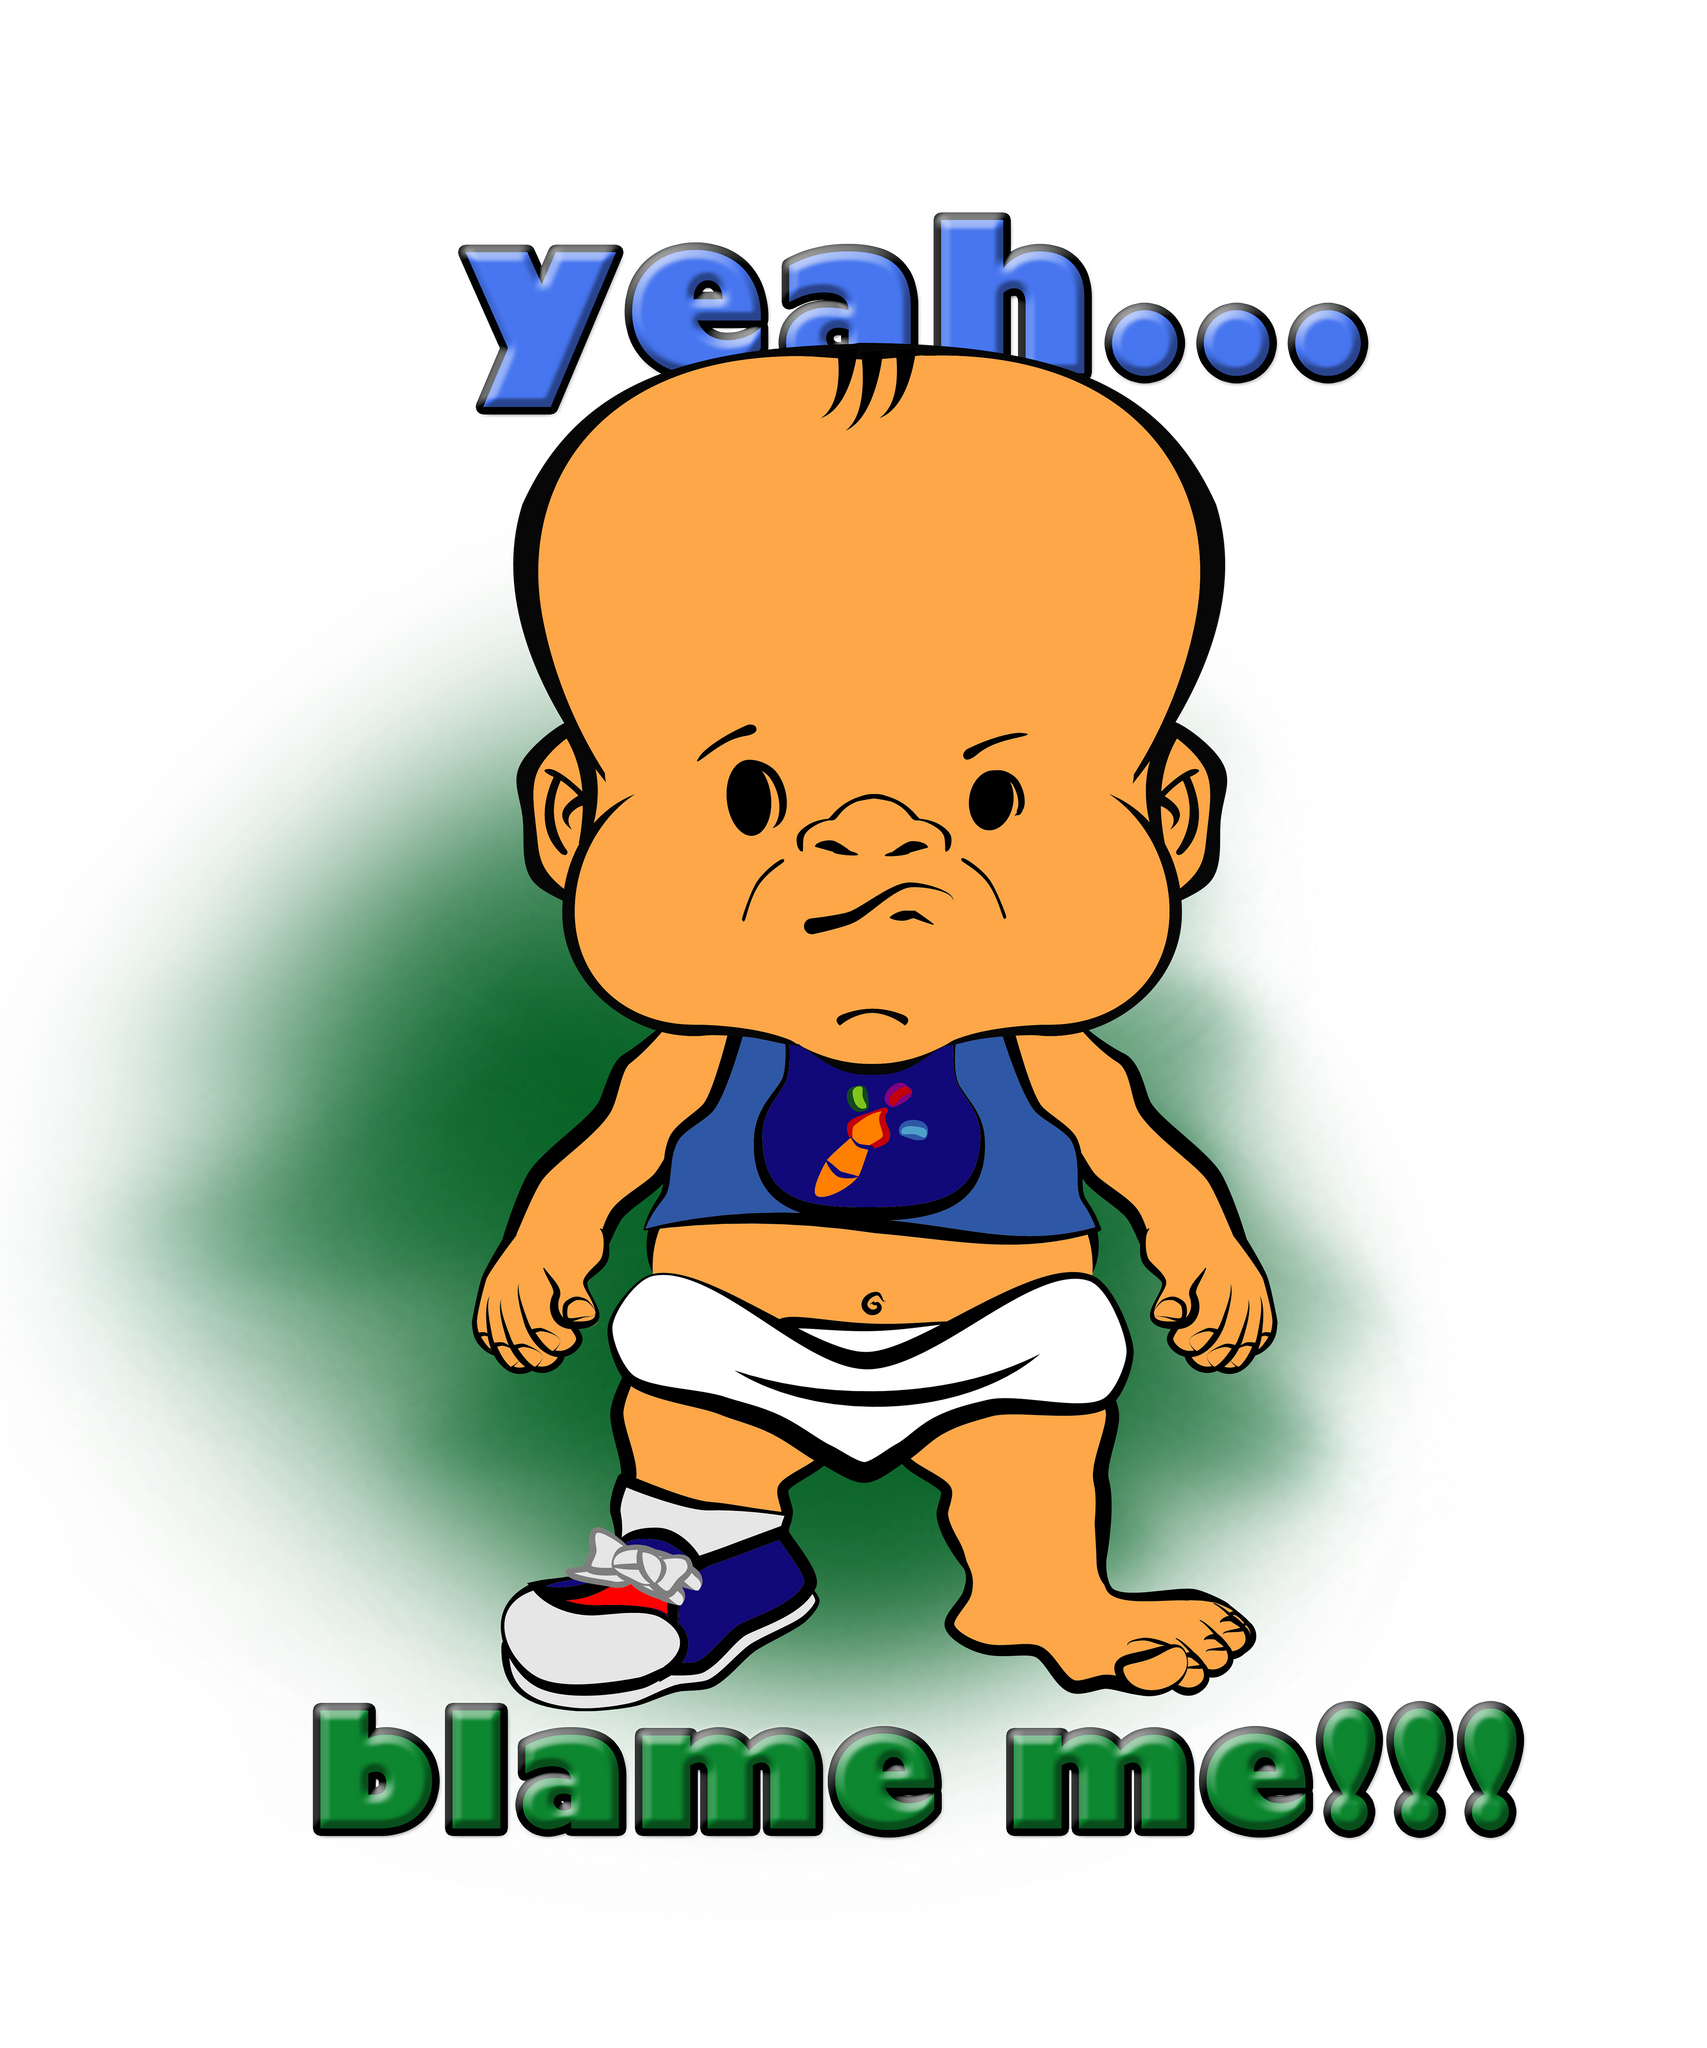 PBCZ0039_blame_me_boy